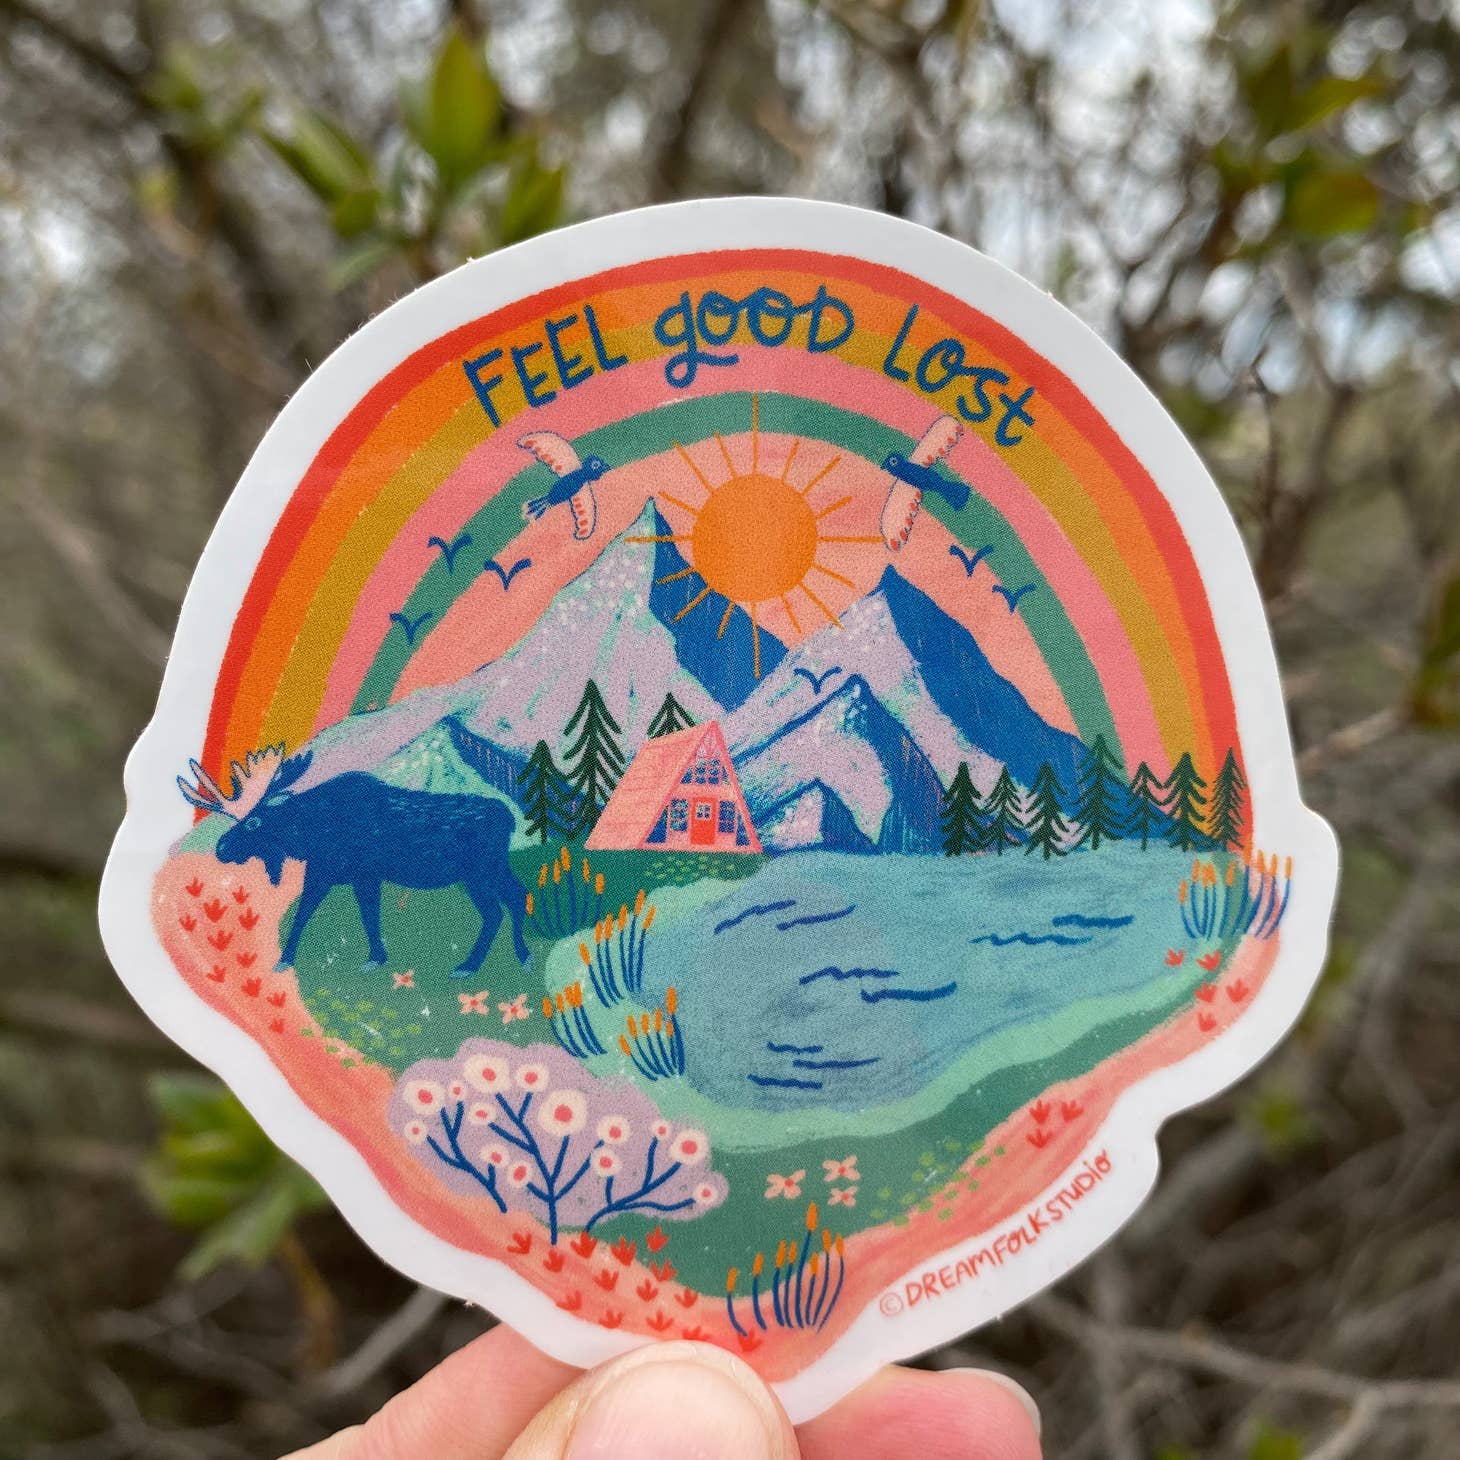 Feel Good Lost Sticker – posey roe